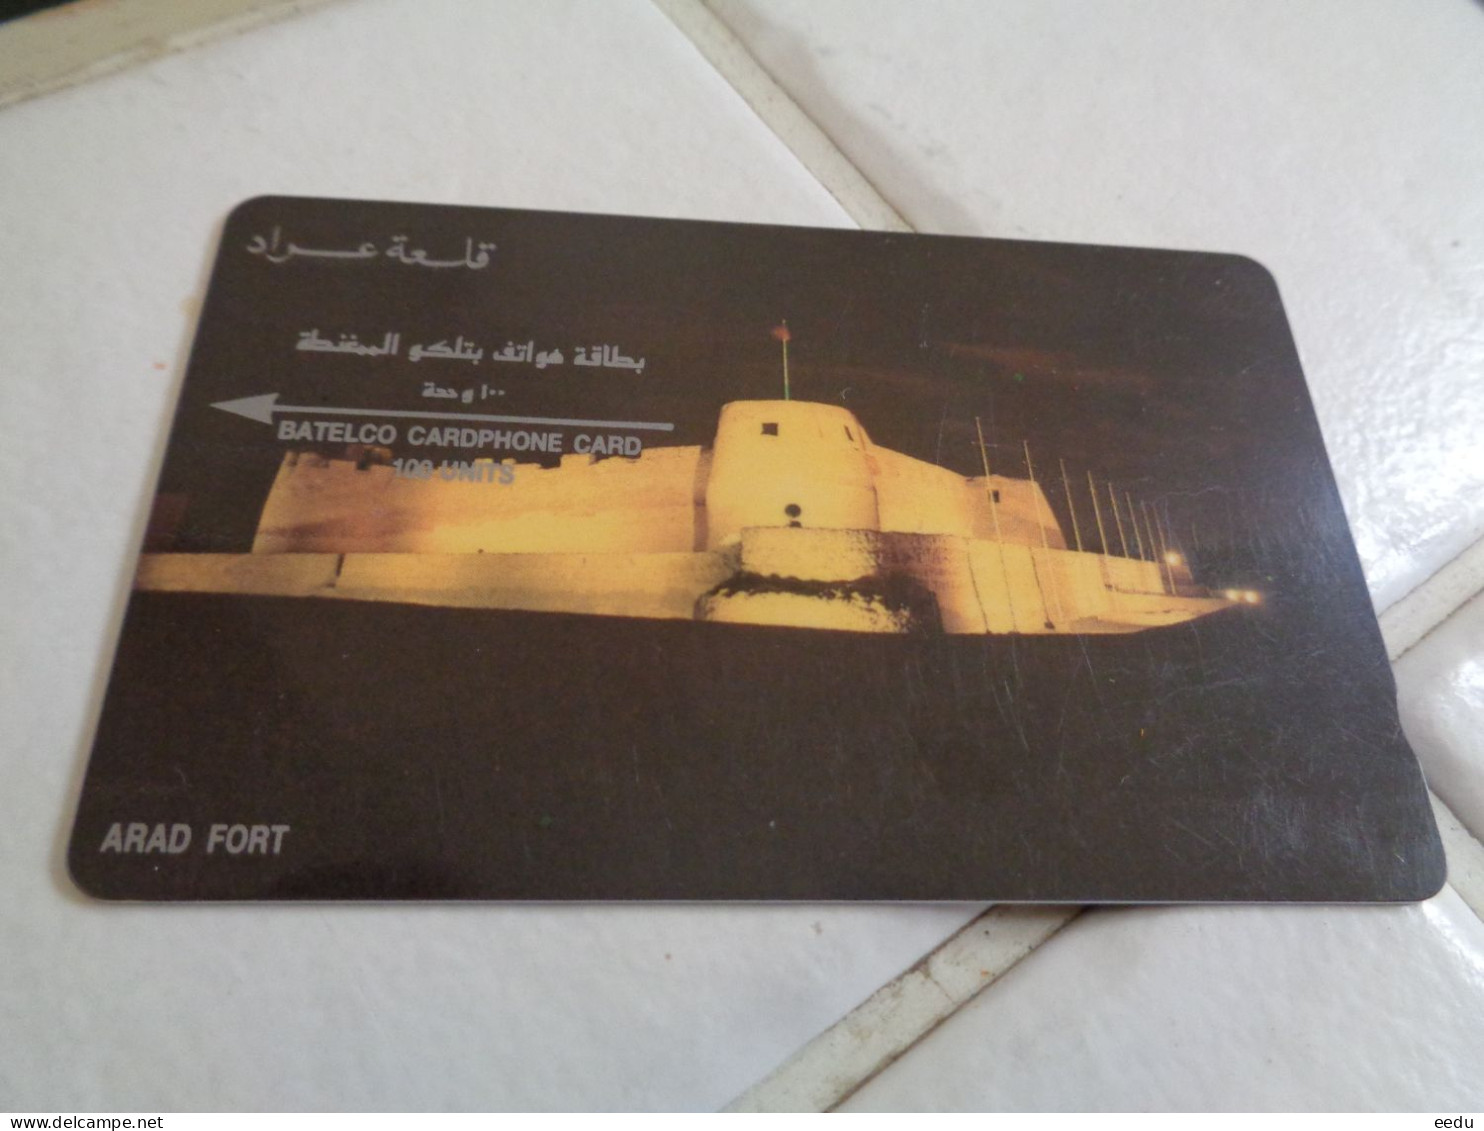 Bahrain Phonecard - Bahrain